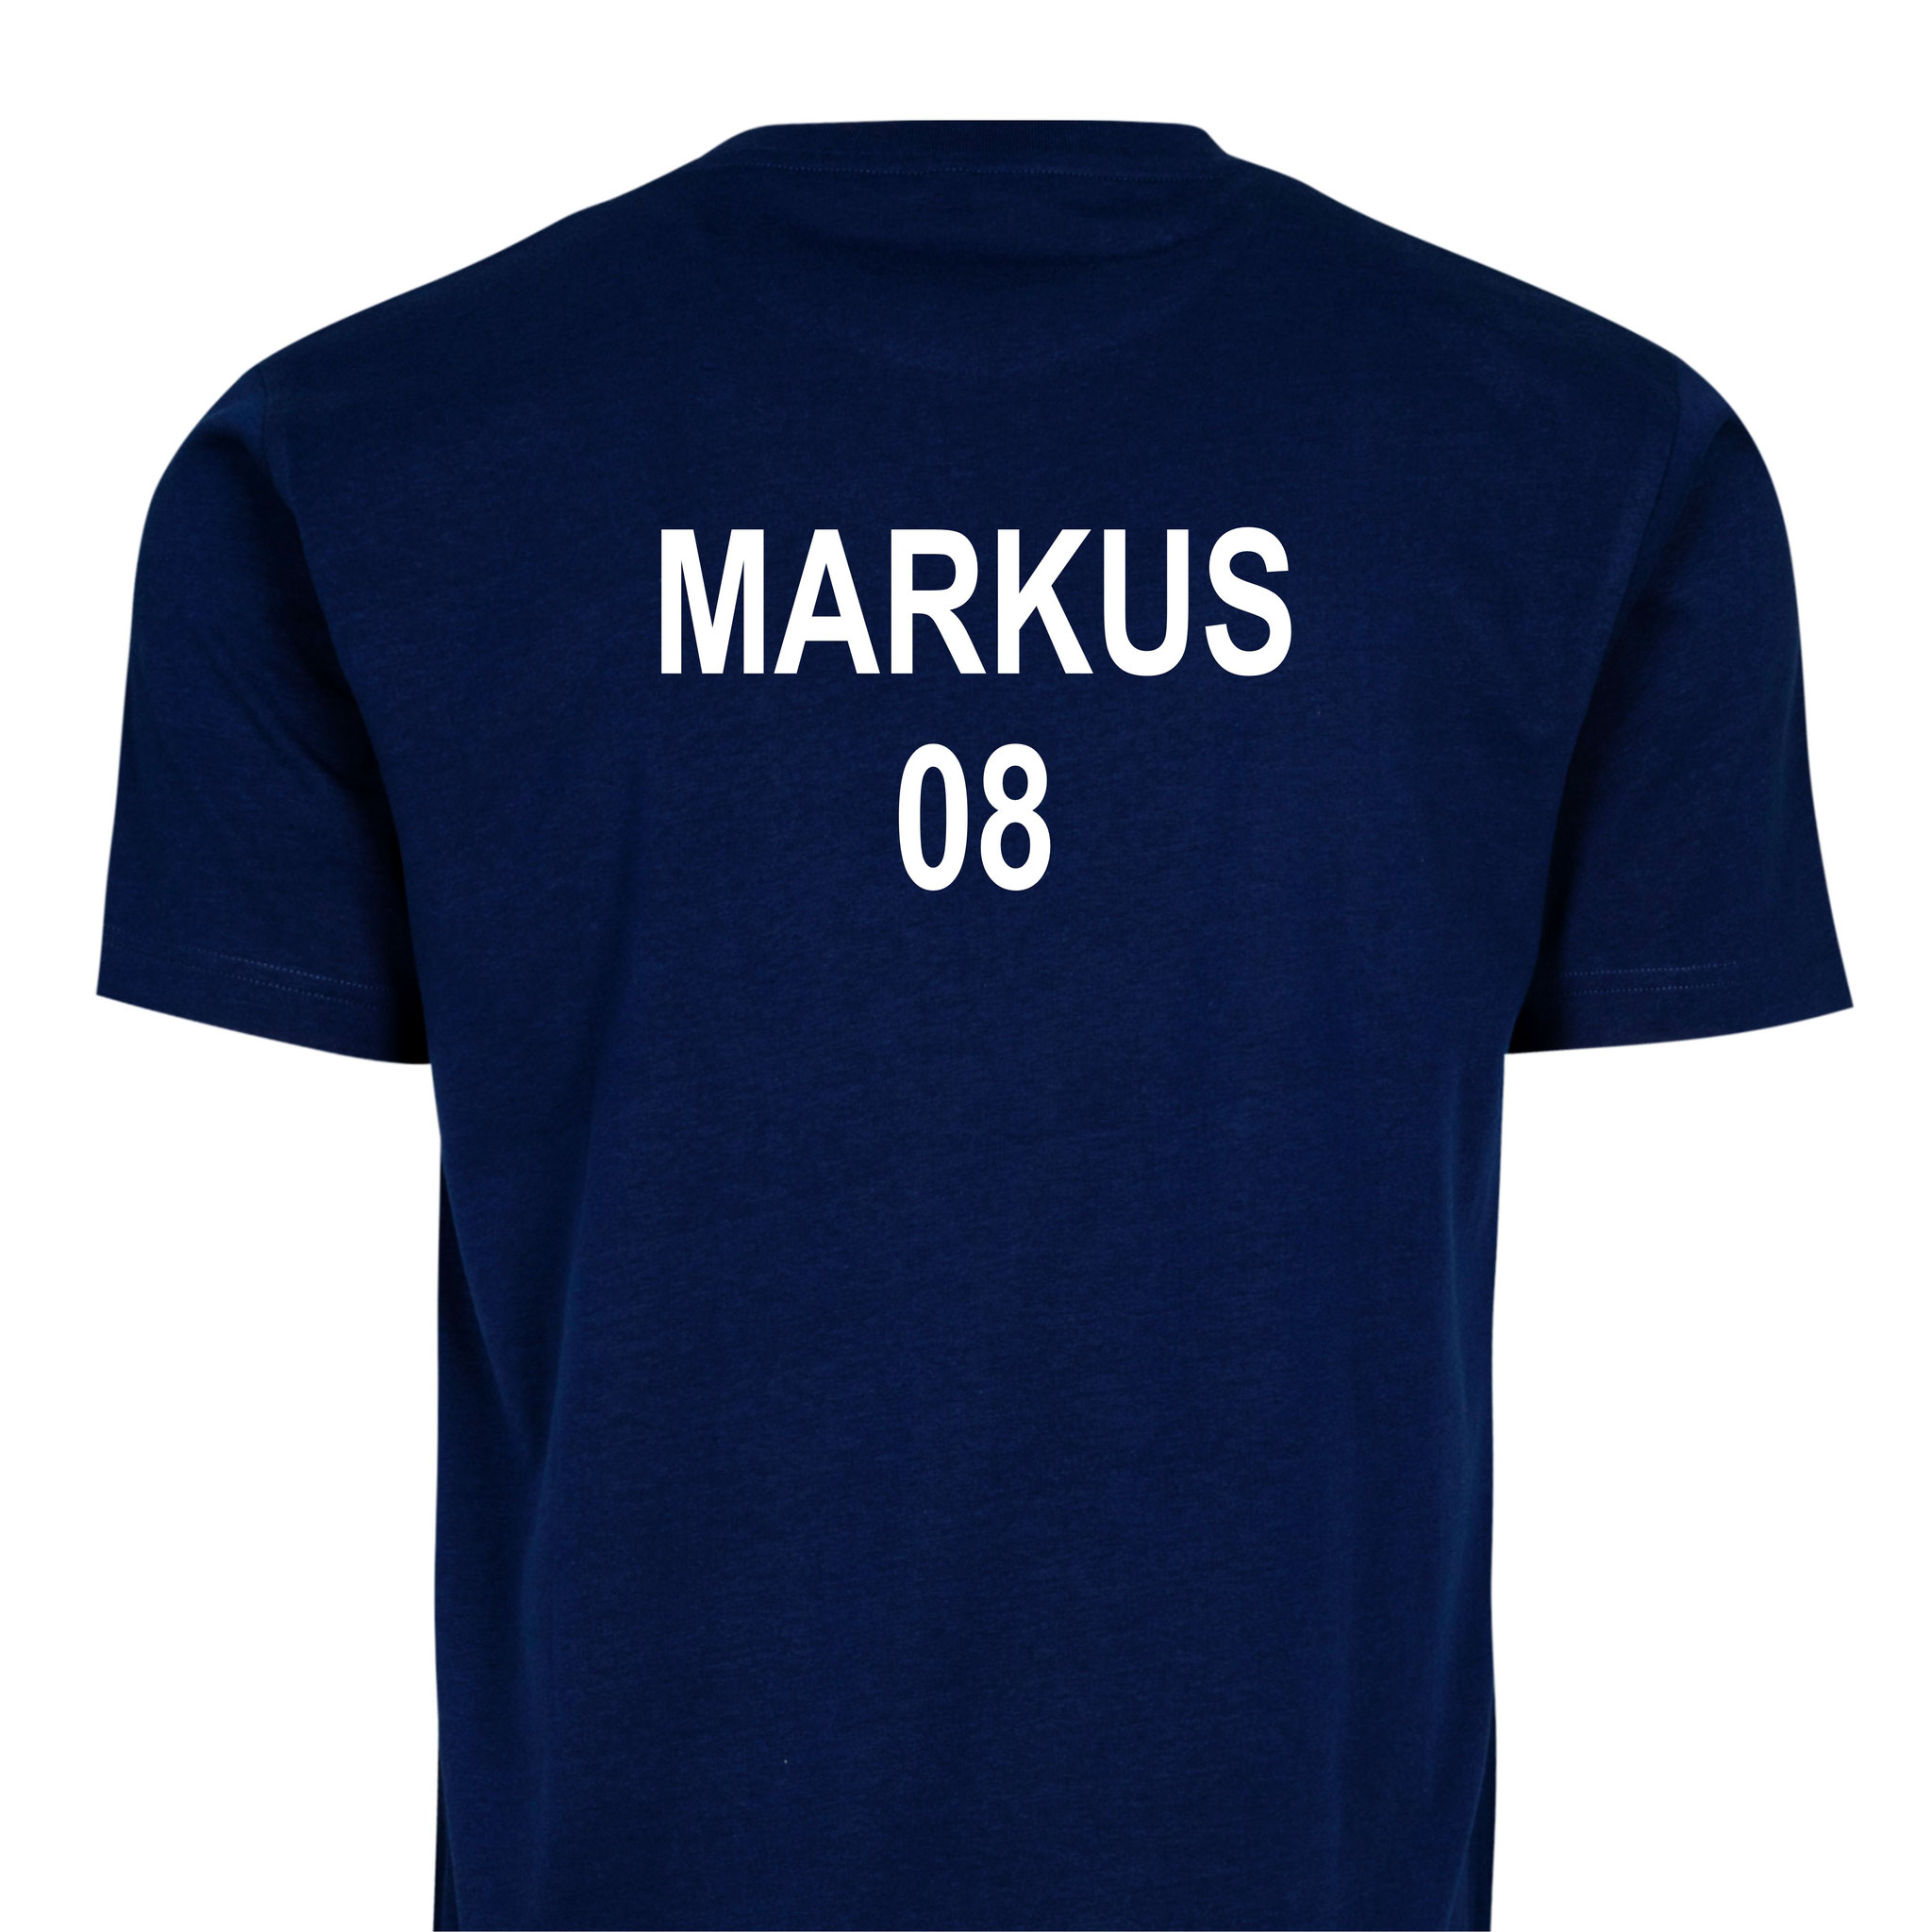 MARKUS 08